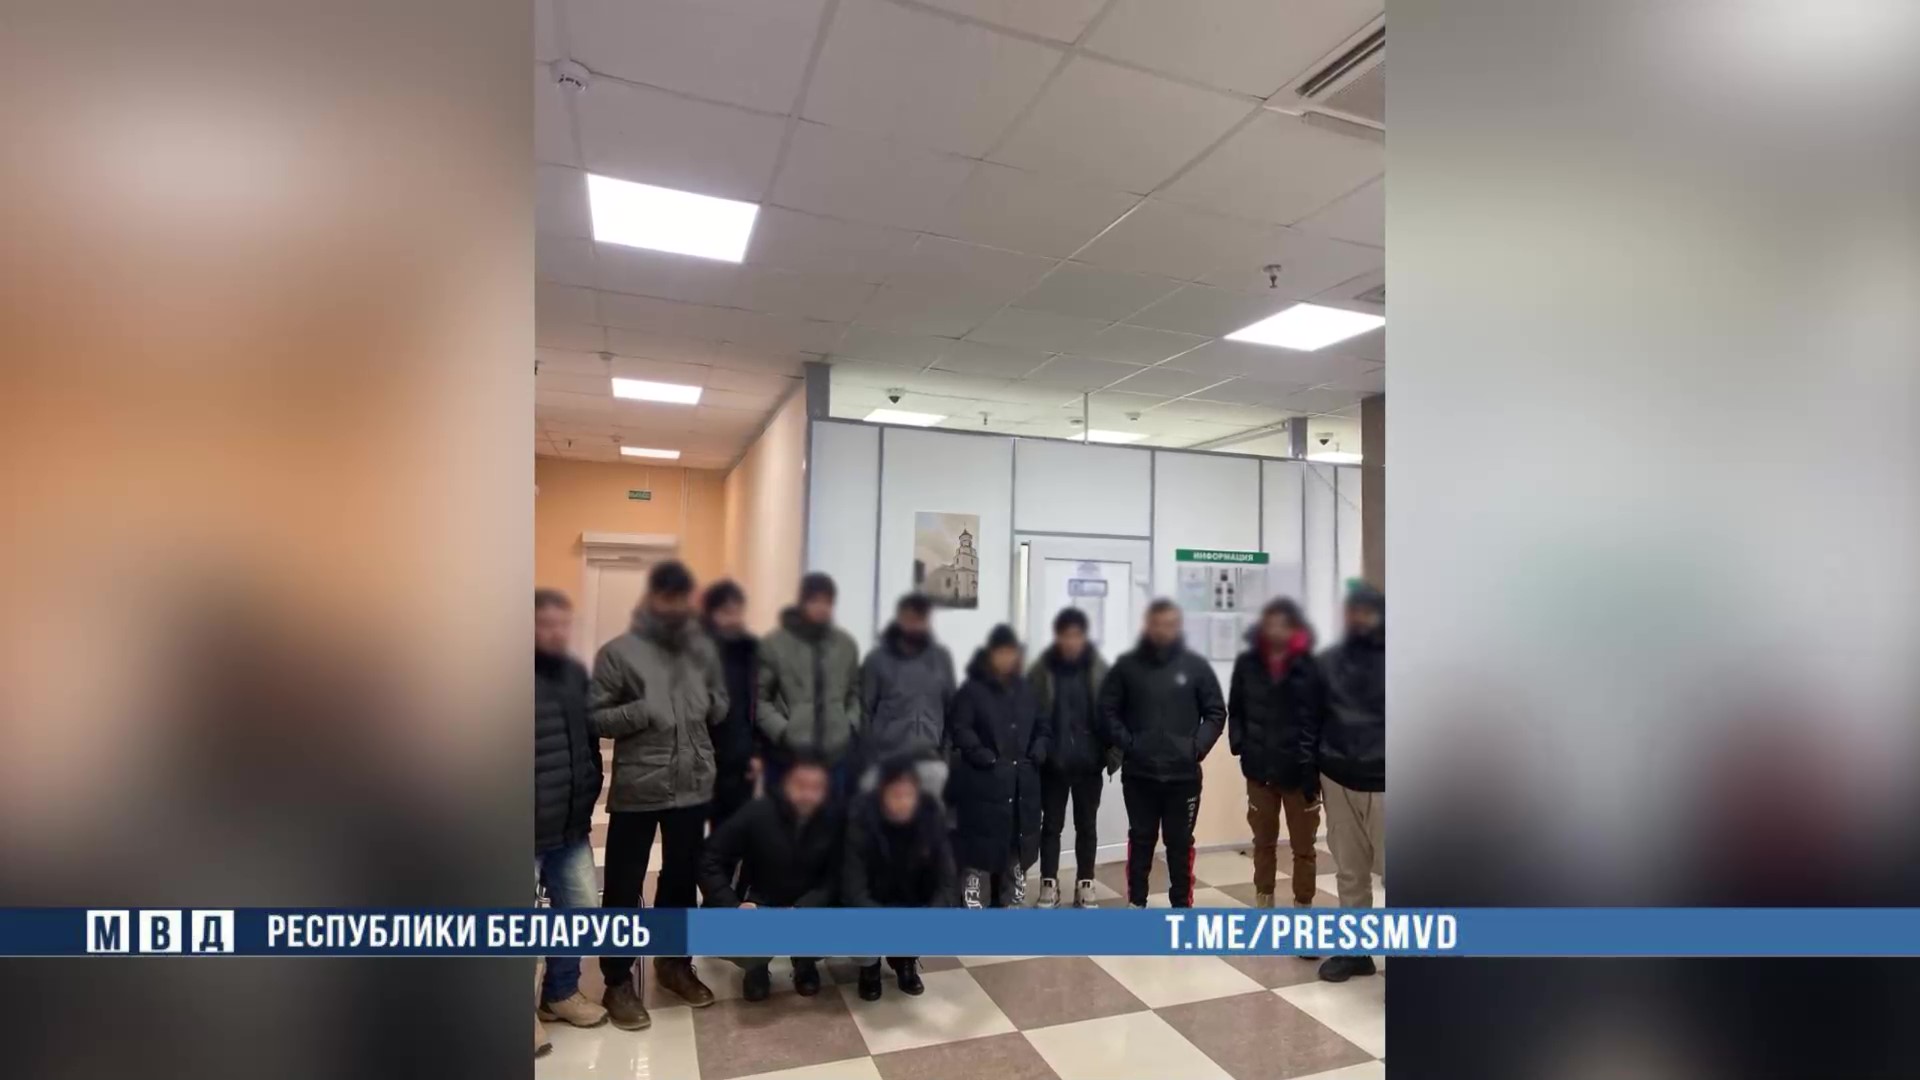 Группа мигрантов задержана в Колодищах под Минском